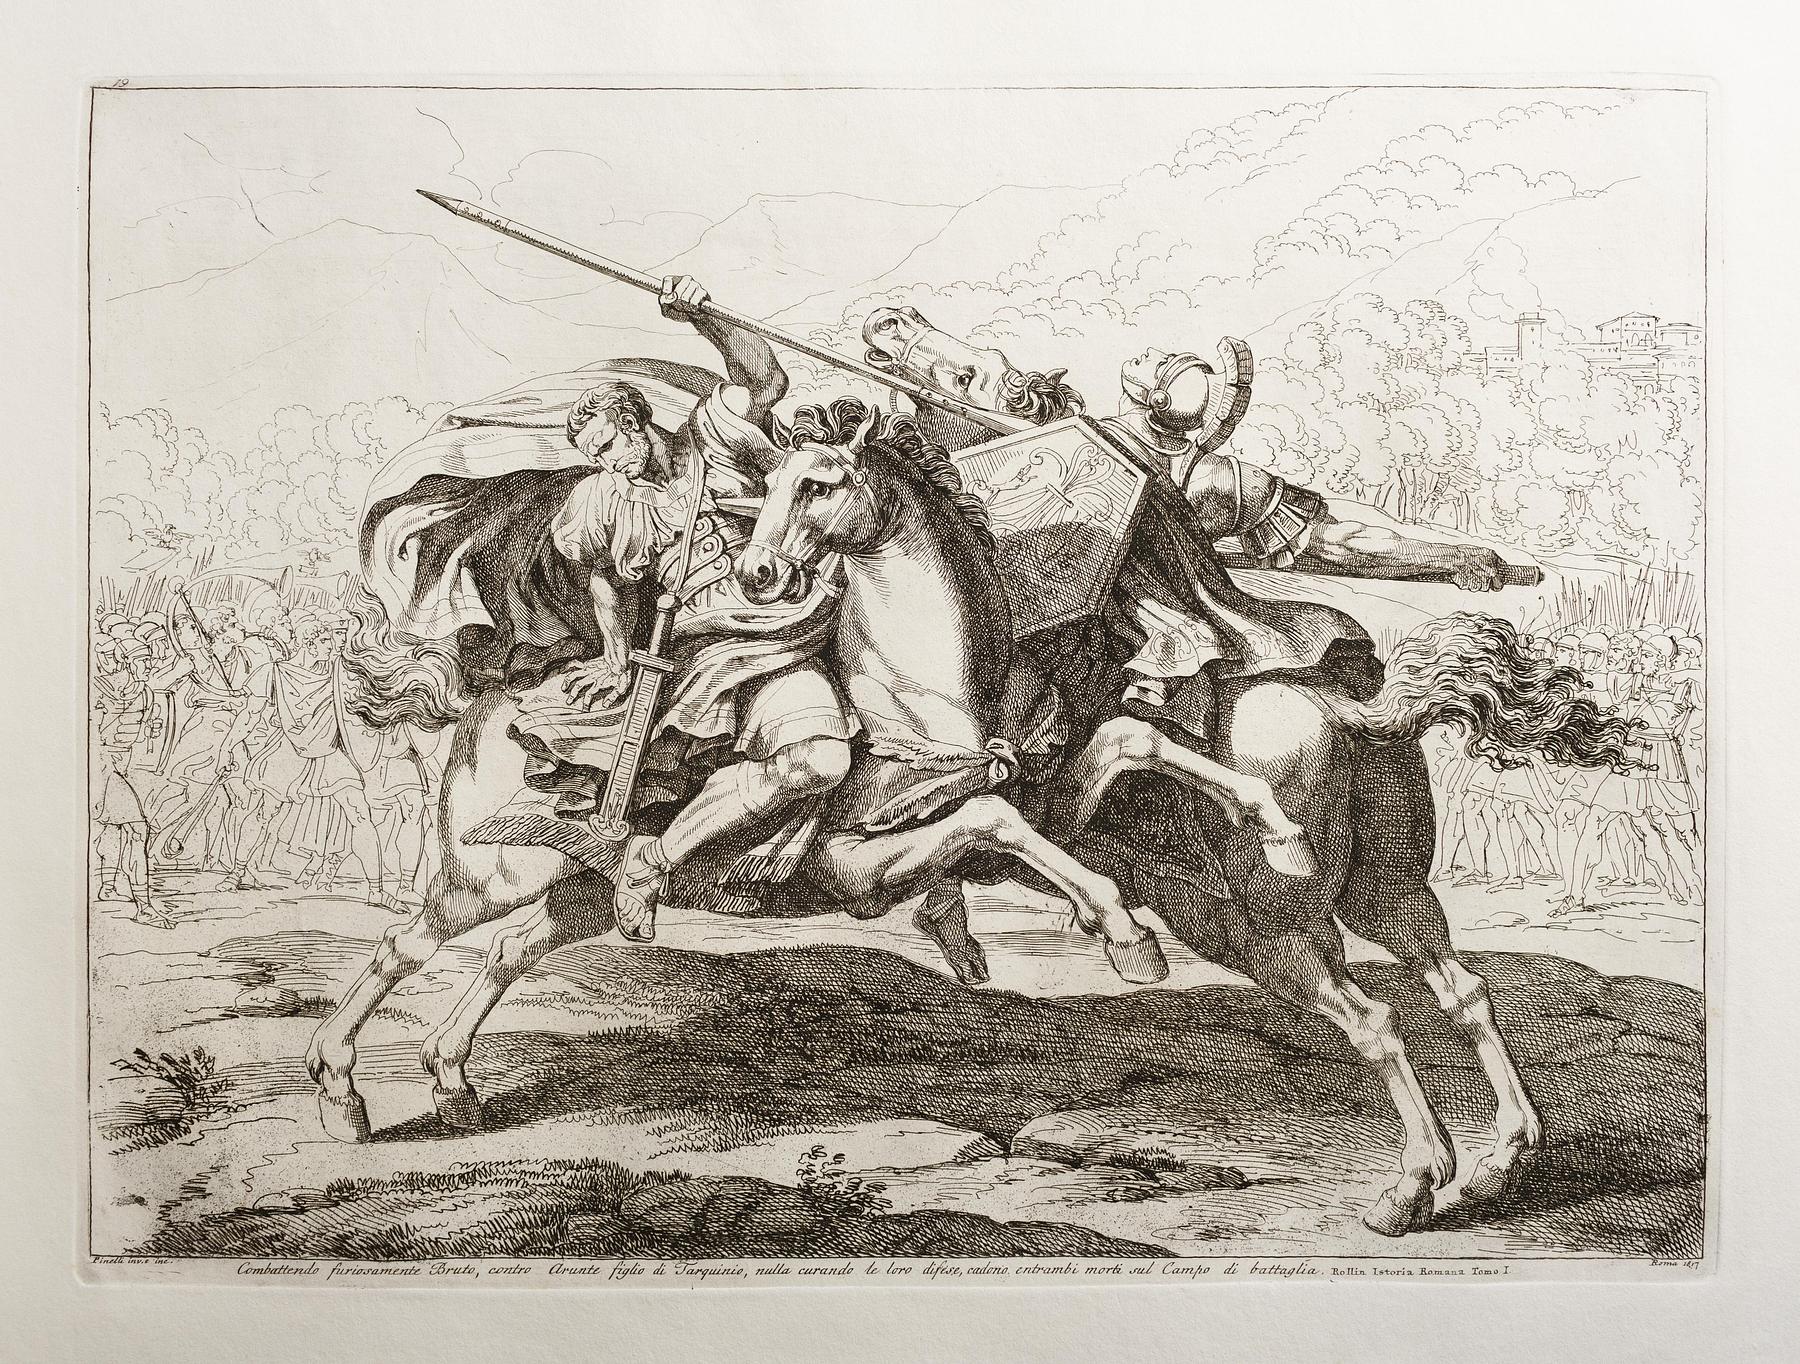 Brutus og Tarquinius i kamp, E943,21